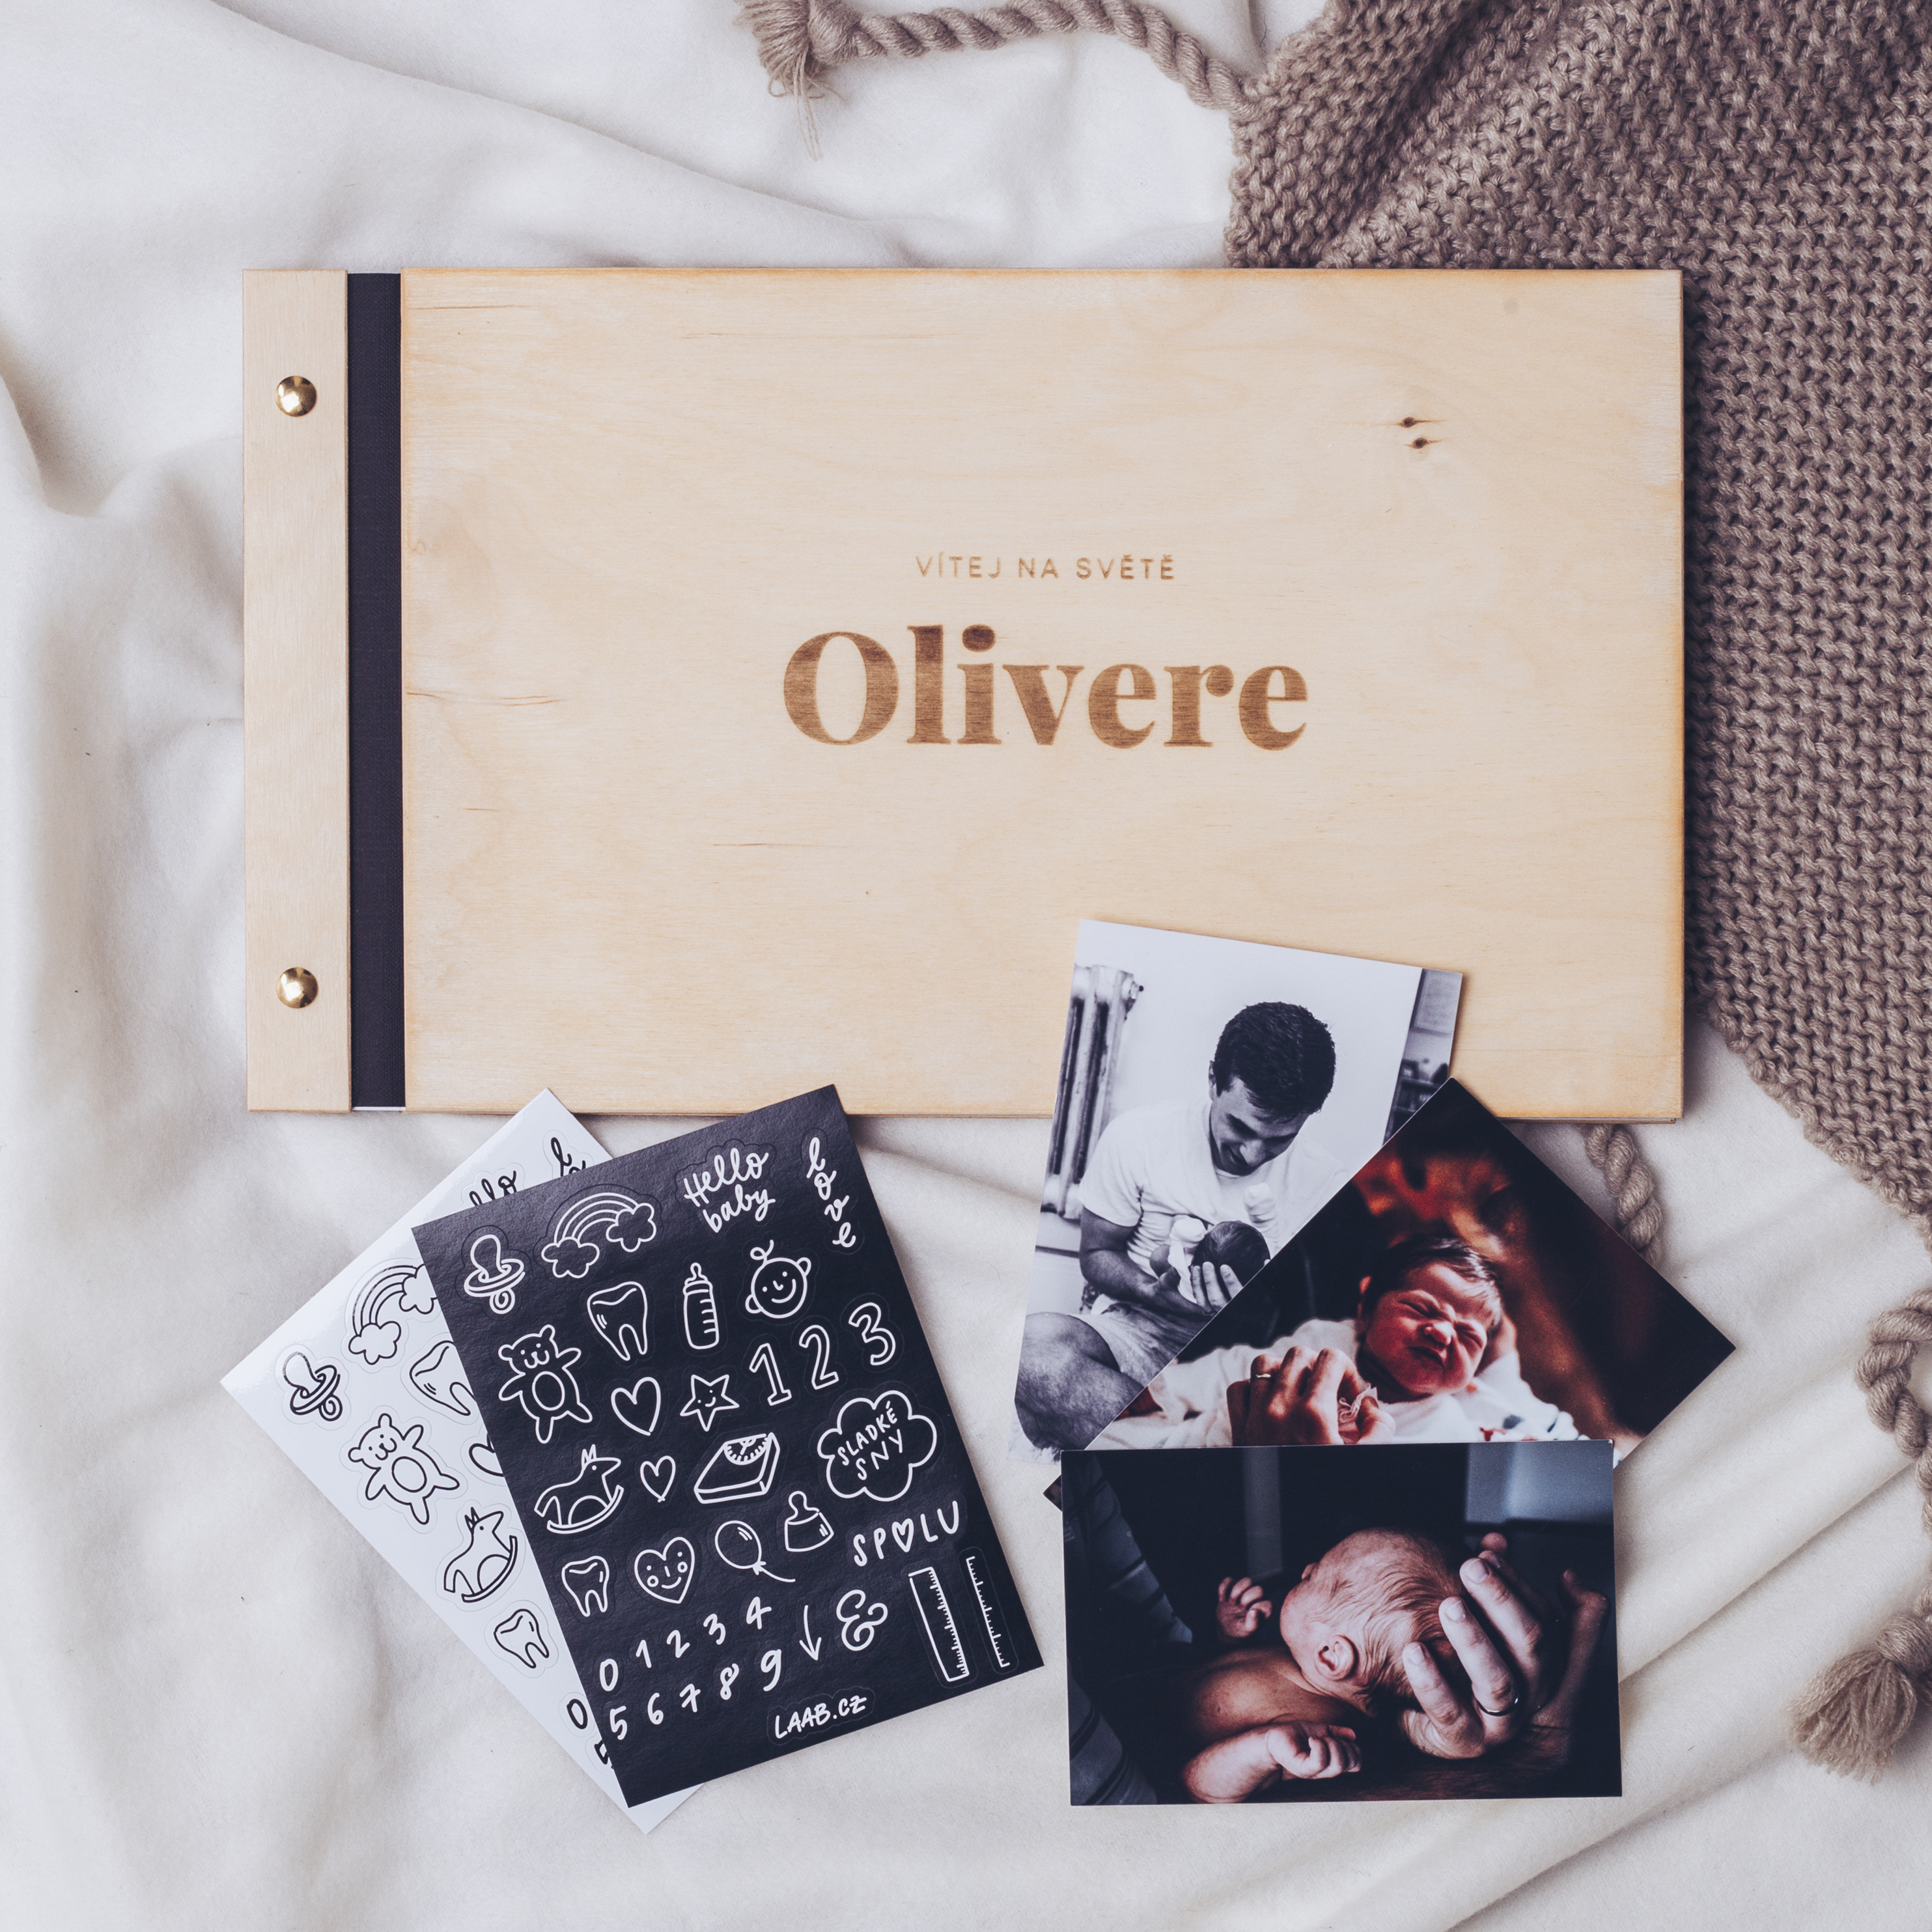 dřevěné fotoalbum Oliver: FORMÁT FOTOALBA na šířku, POČET LISTŮ 20 s prokladovými listy, FORMÁT FOTOALBA čtverec, POČET LISTŮ 20 s prokladovými listy, BARVA LISTŮ černá